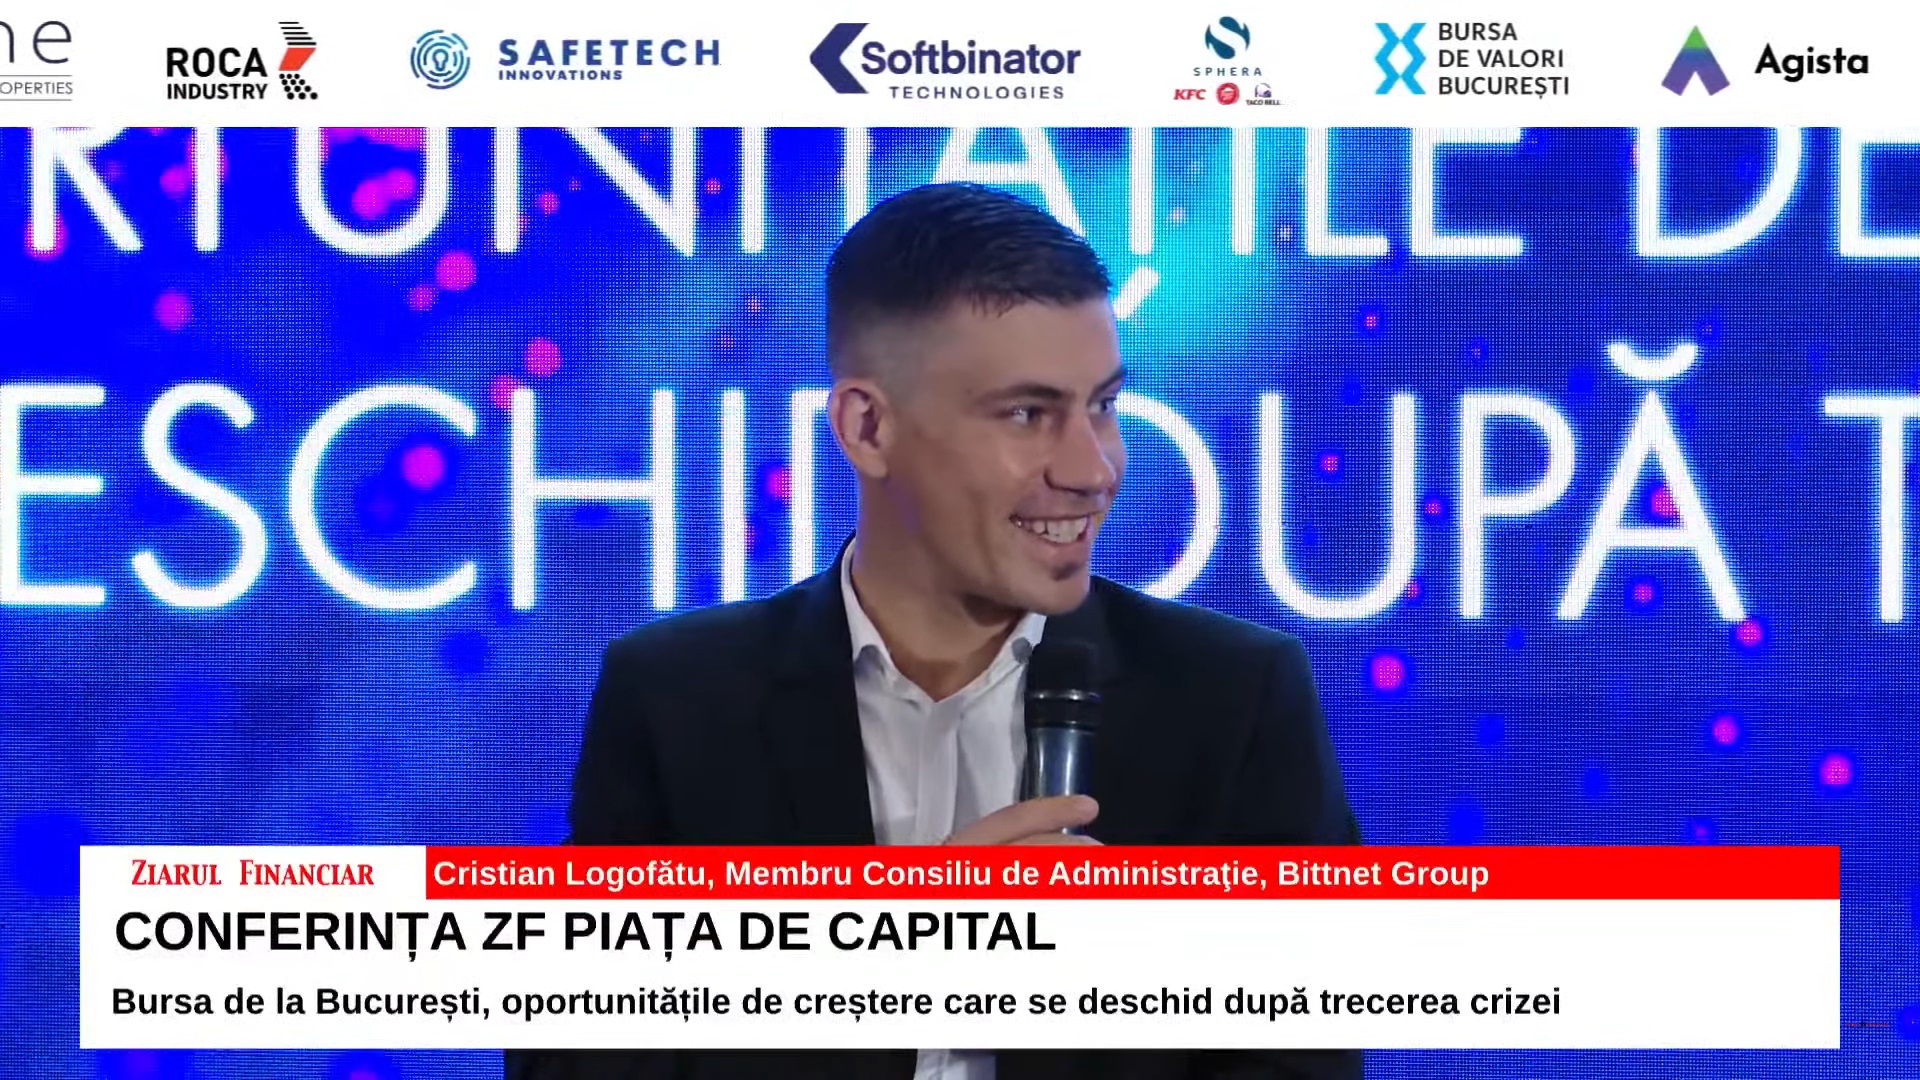 Cristian Logofătu, Bittnet Group: Cred că piaţa de capital este singura soluţie sigură pentru a crea bogăţie în cadrul unei ţări